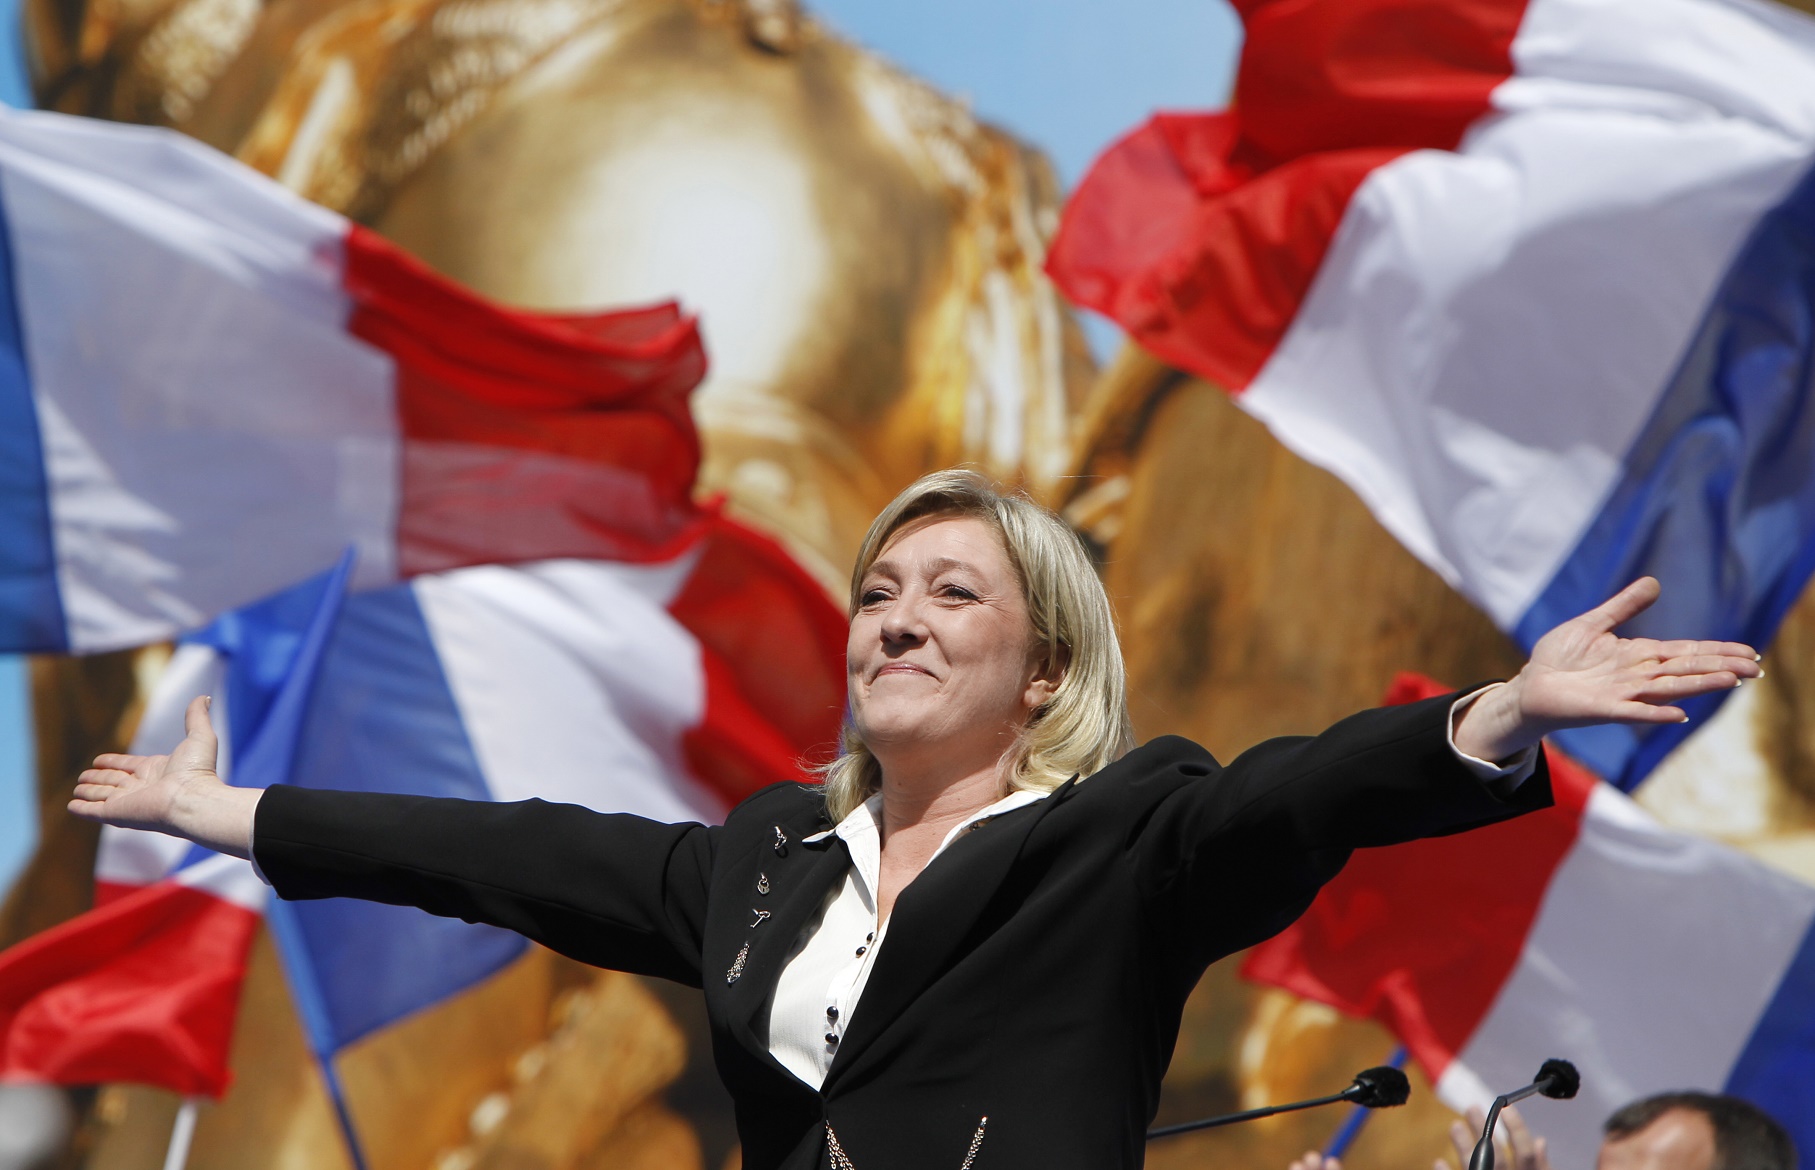 Tudo indica que Marine Le Pen não vencerá o segundo turno da eleição francesa, mas seu partido sai fortalecido e já não assusta parte dos eleitores. Foto Kenzo Tribouillard/AFP